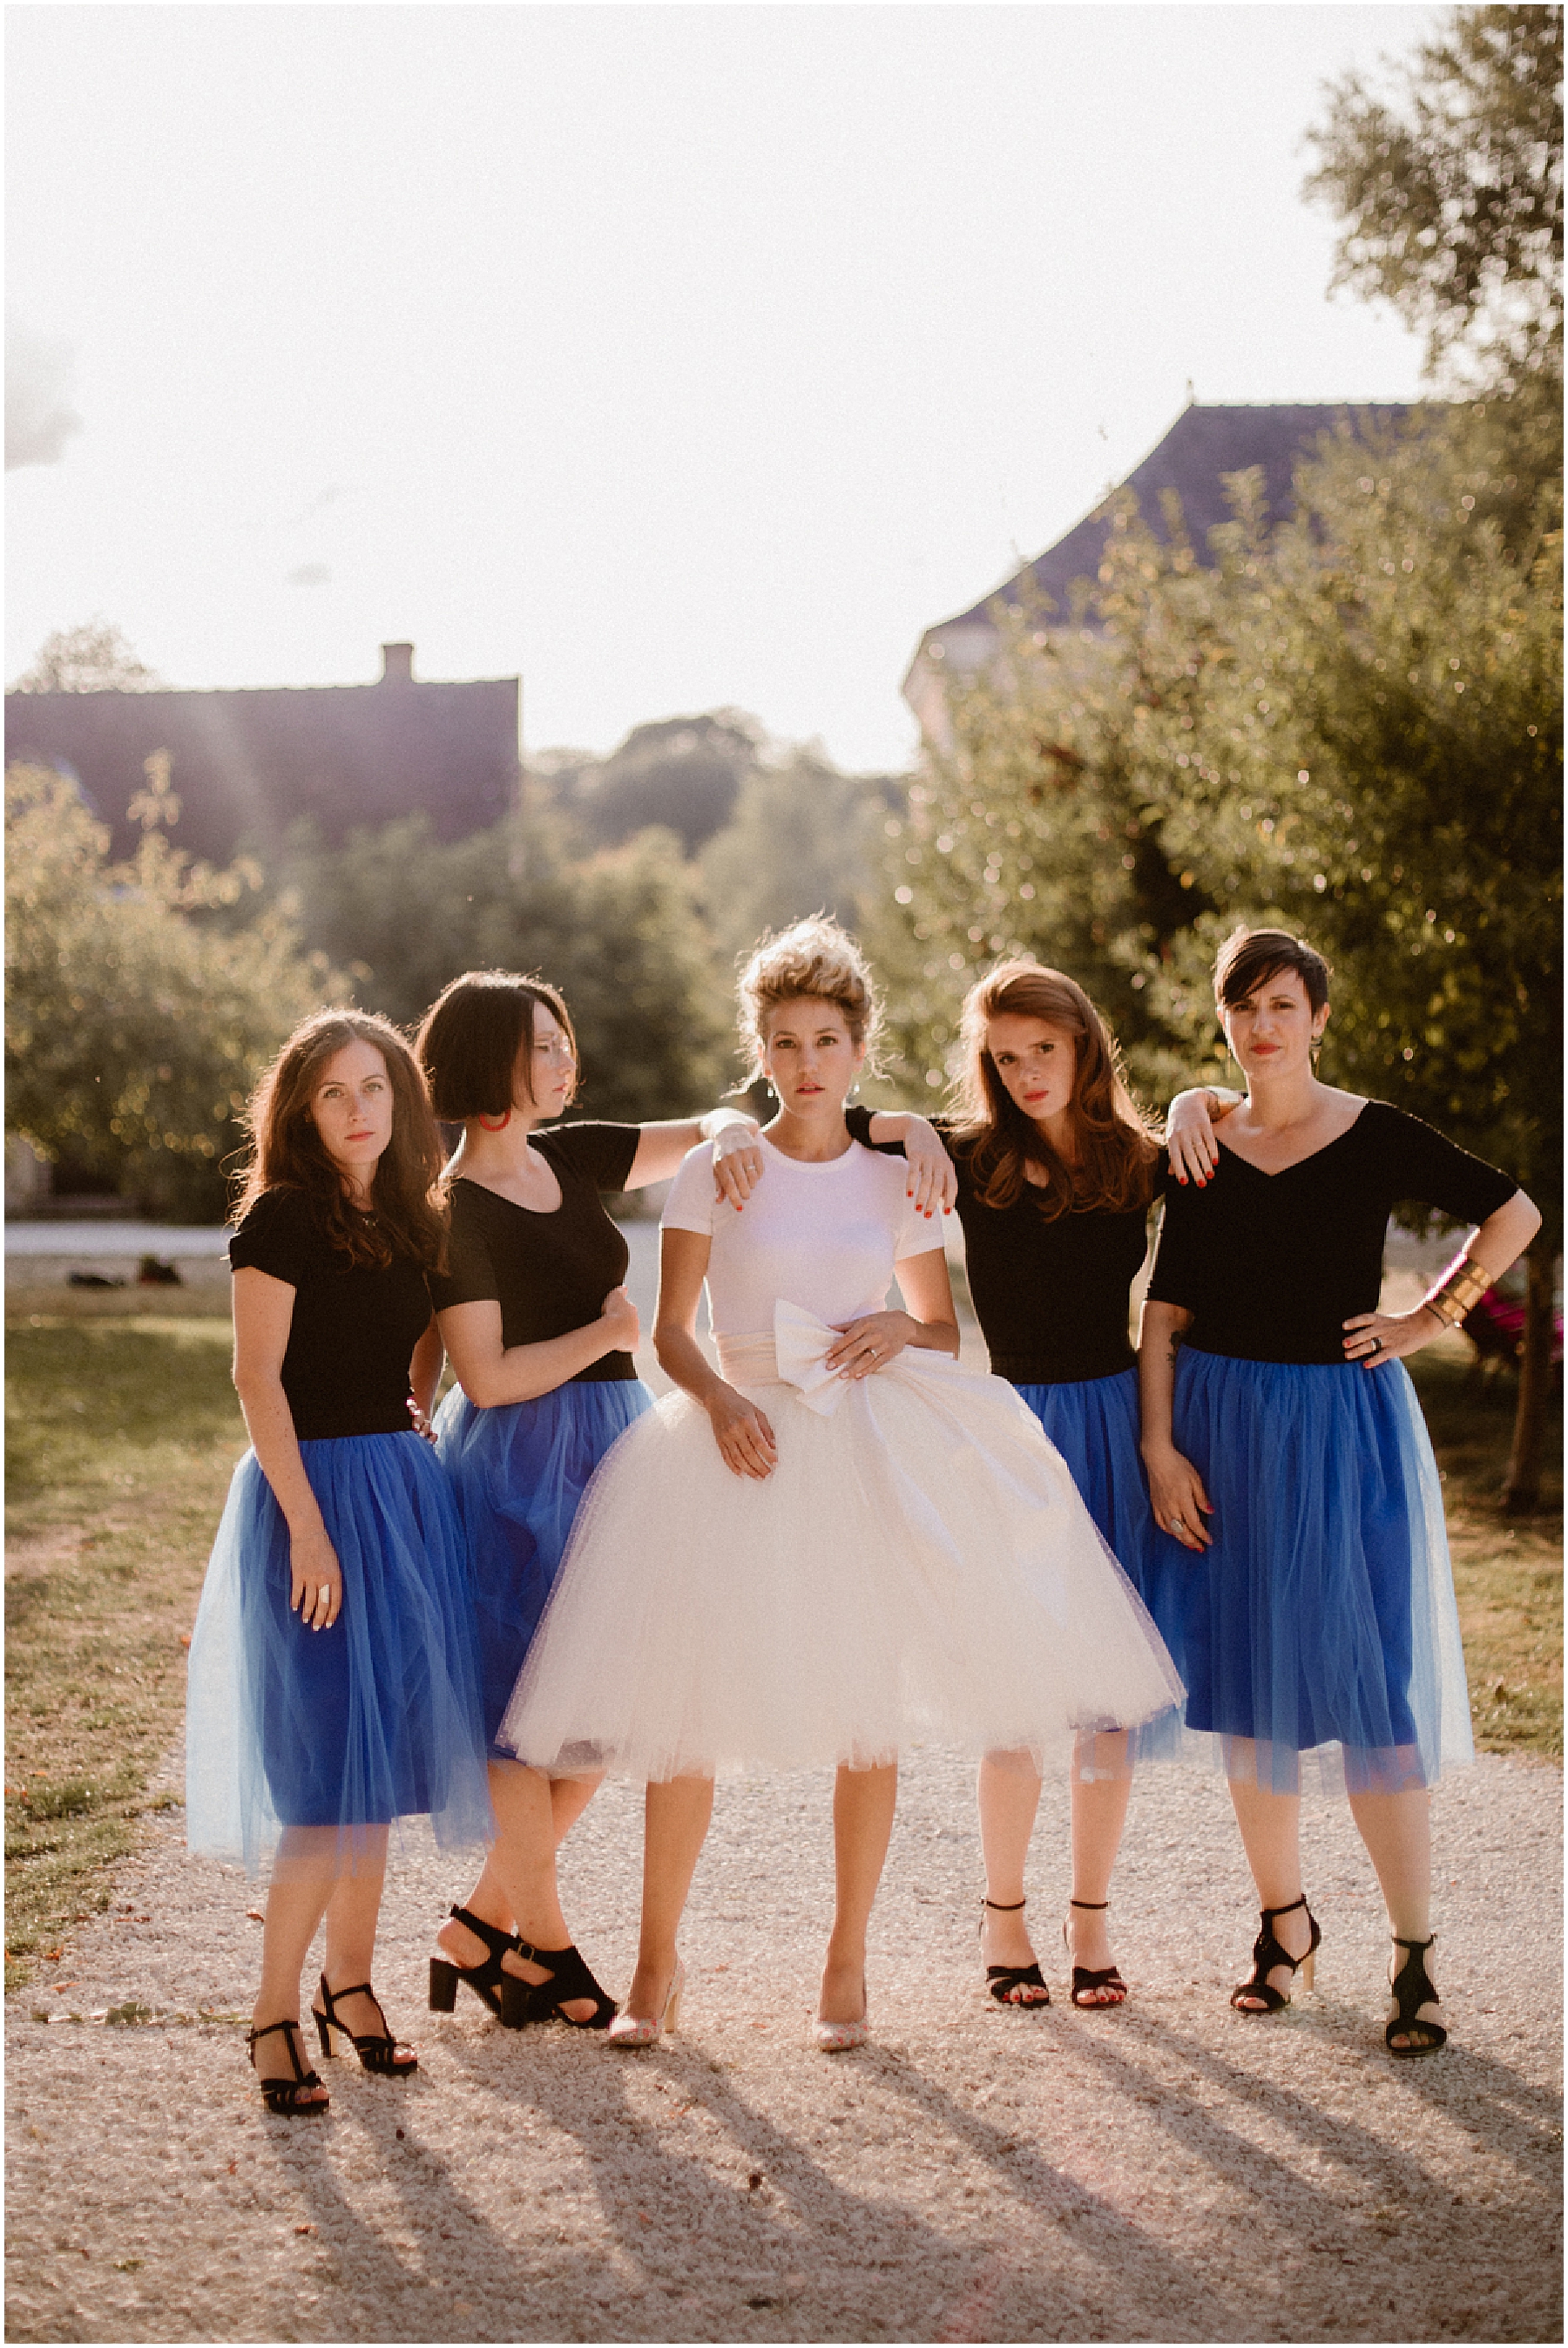 Photographe mariage Aix en Provence